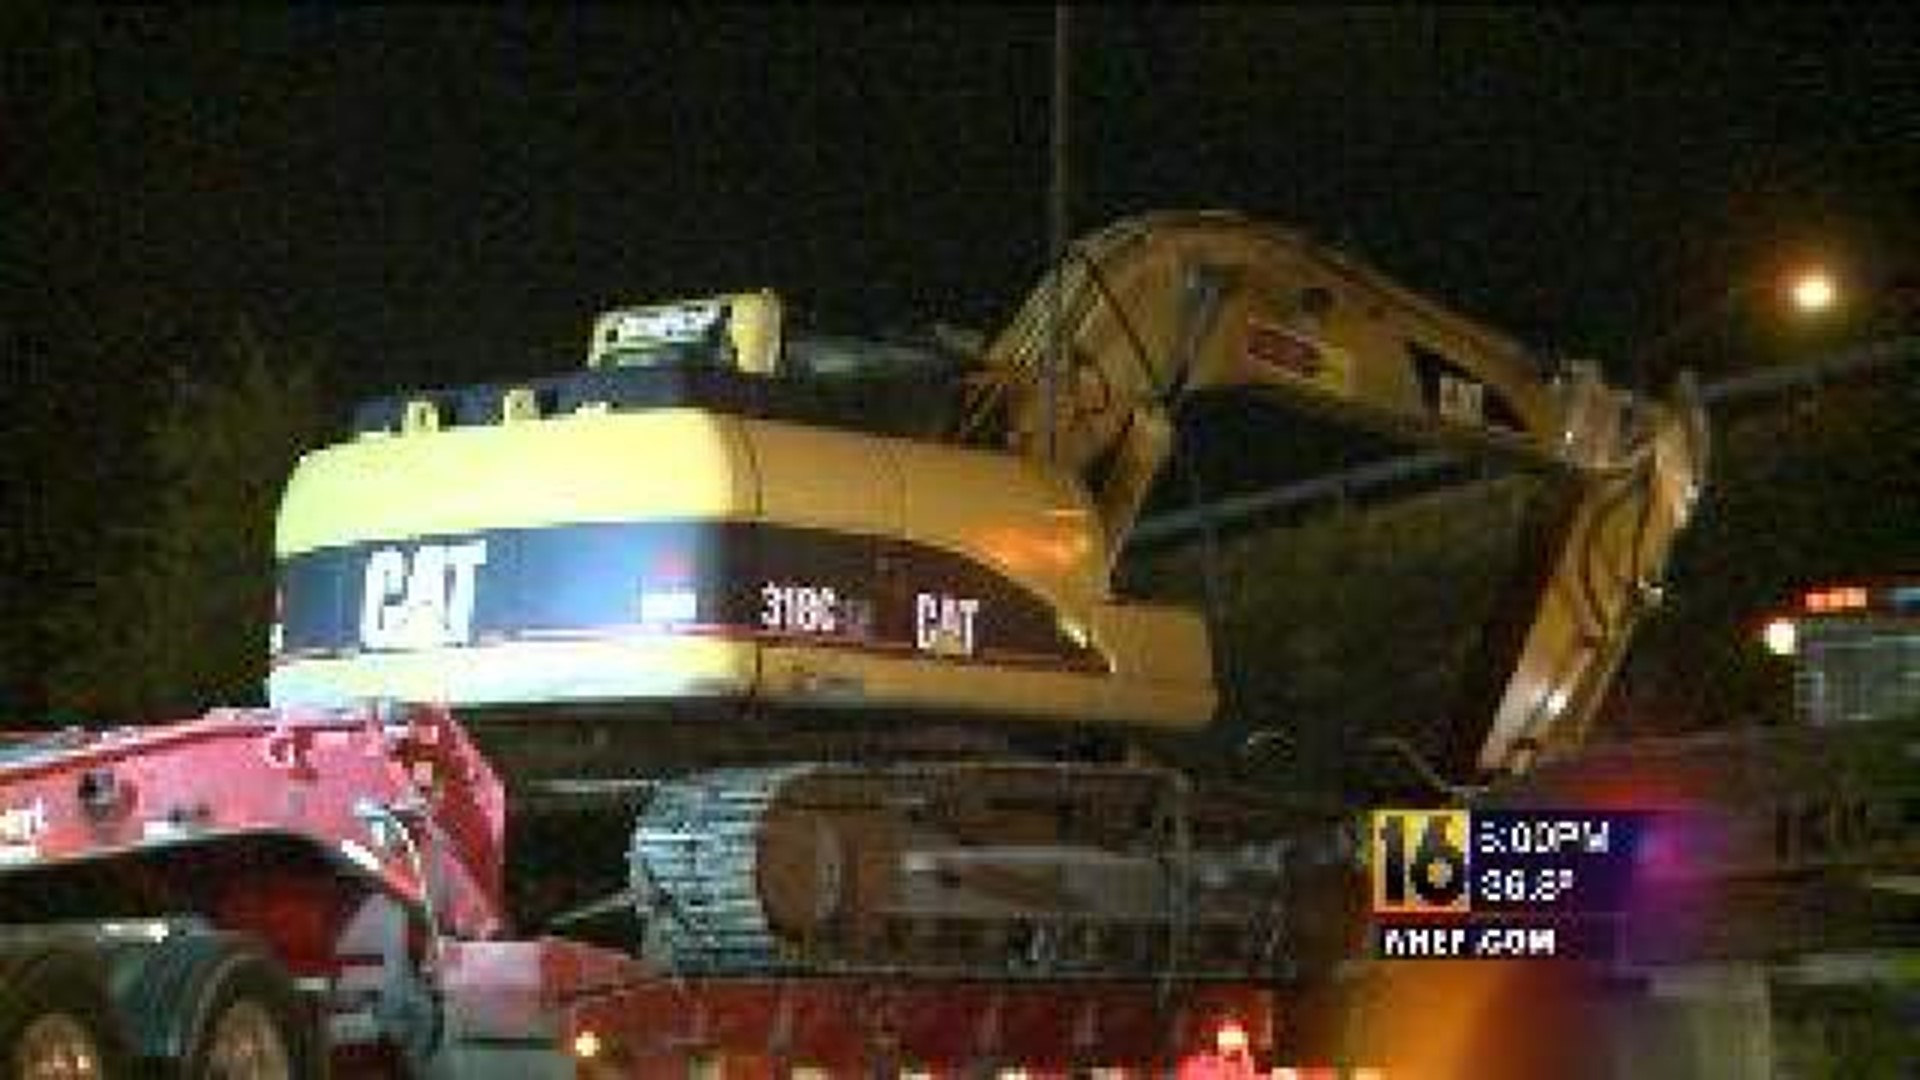 Police Investigate Crash That Damaged Scranton Bridge